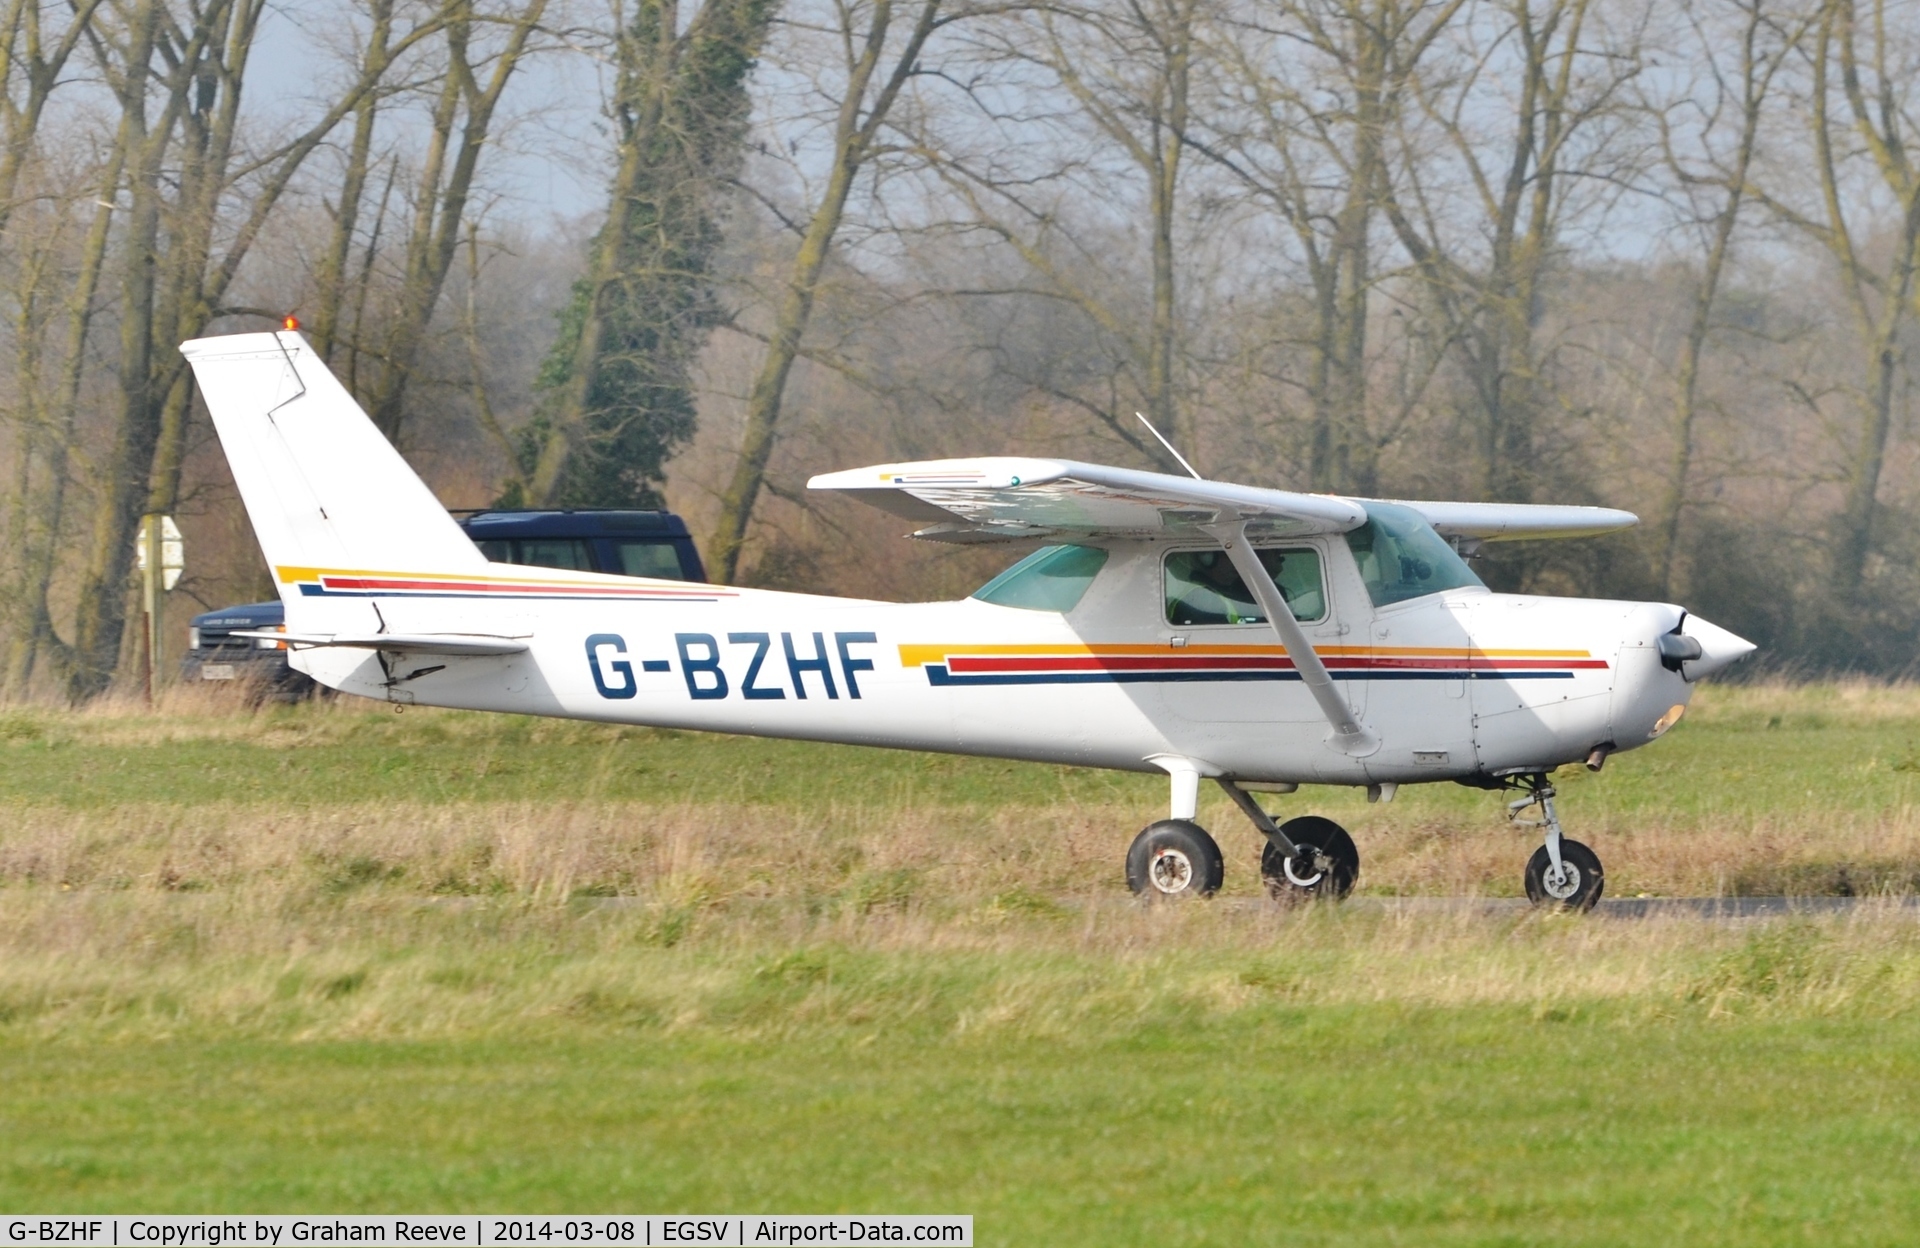 G-BZHF, 1979 Cessna 152 C/N 152-83986, Just landed.